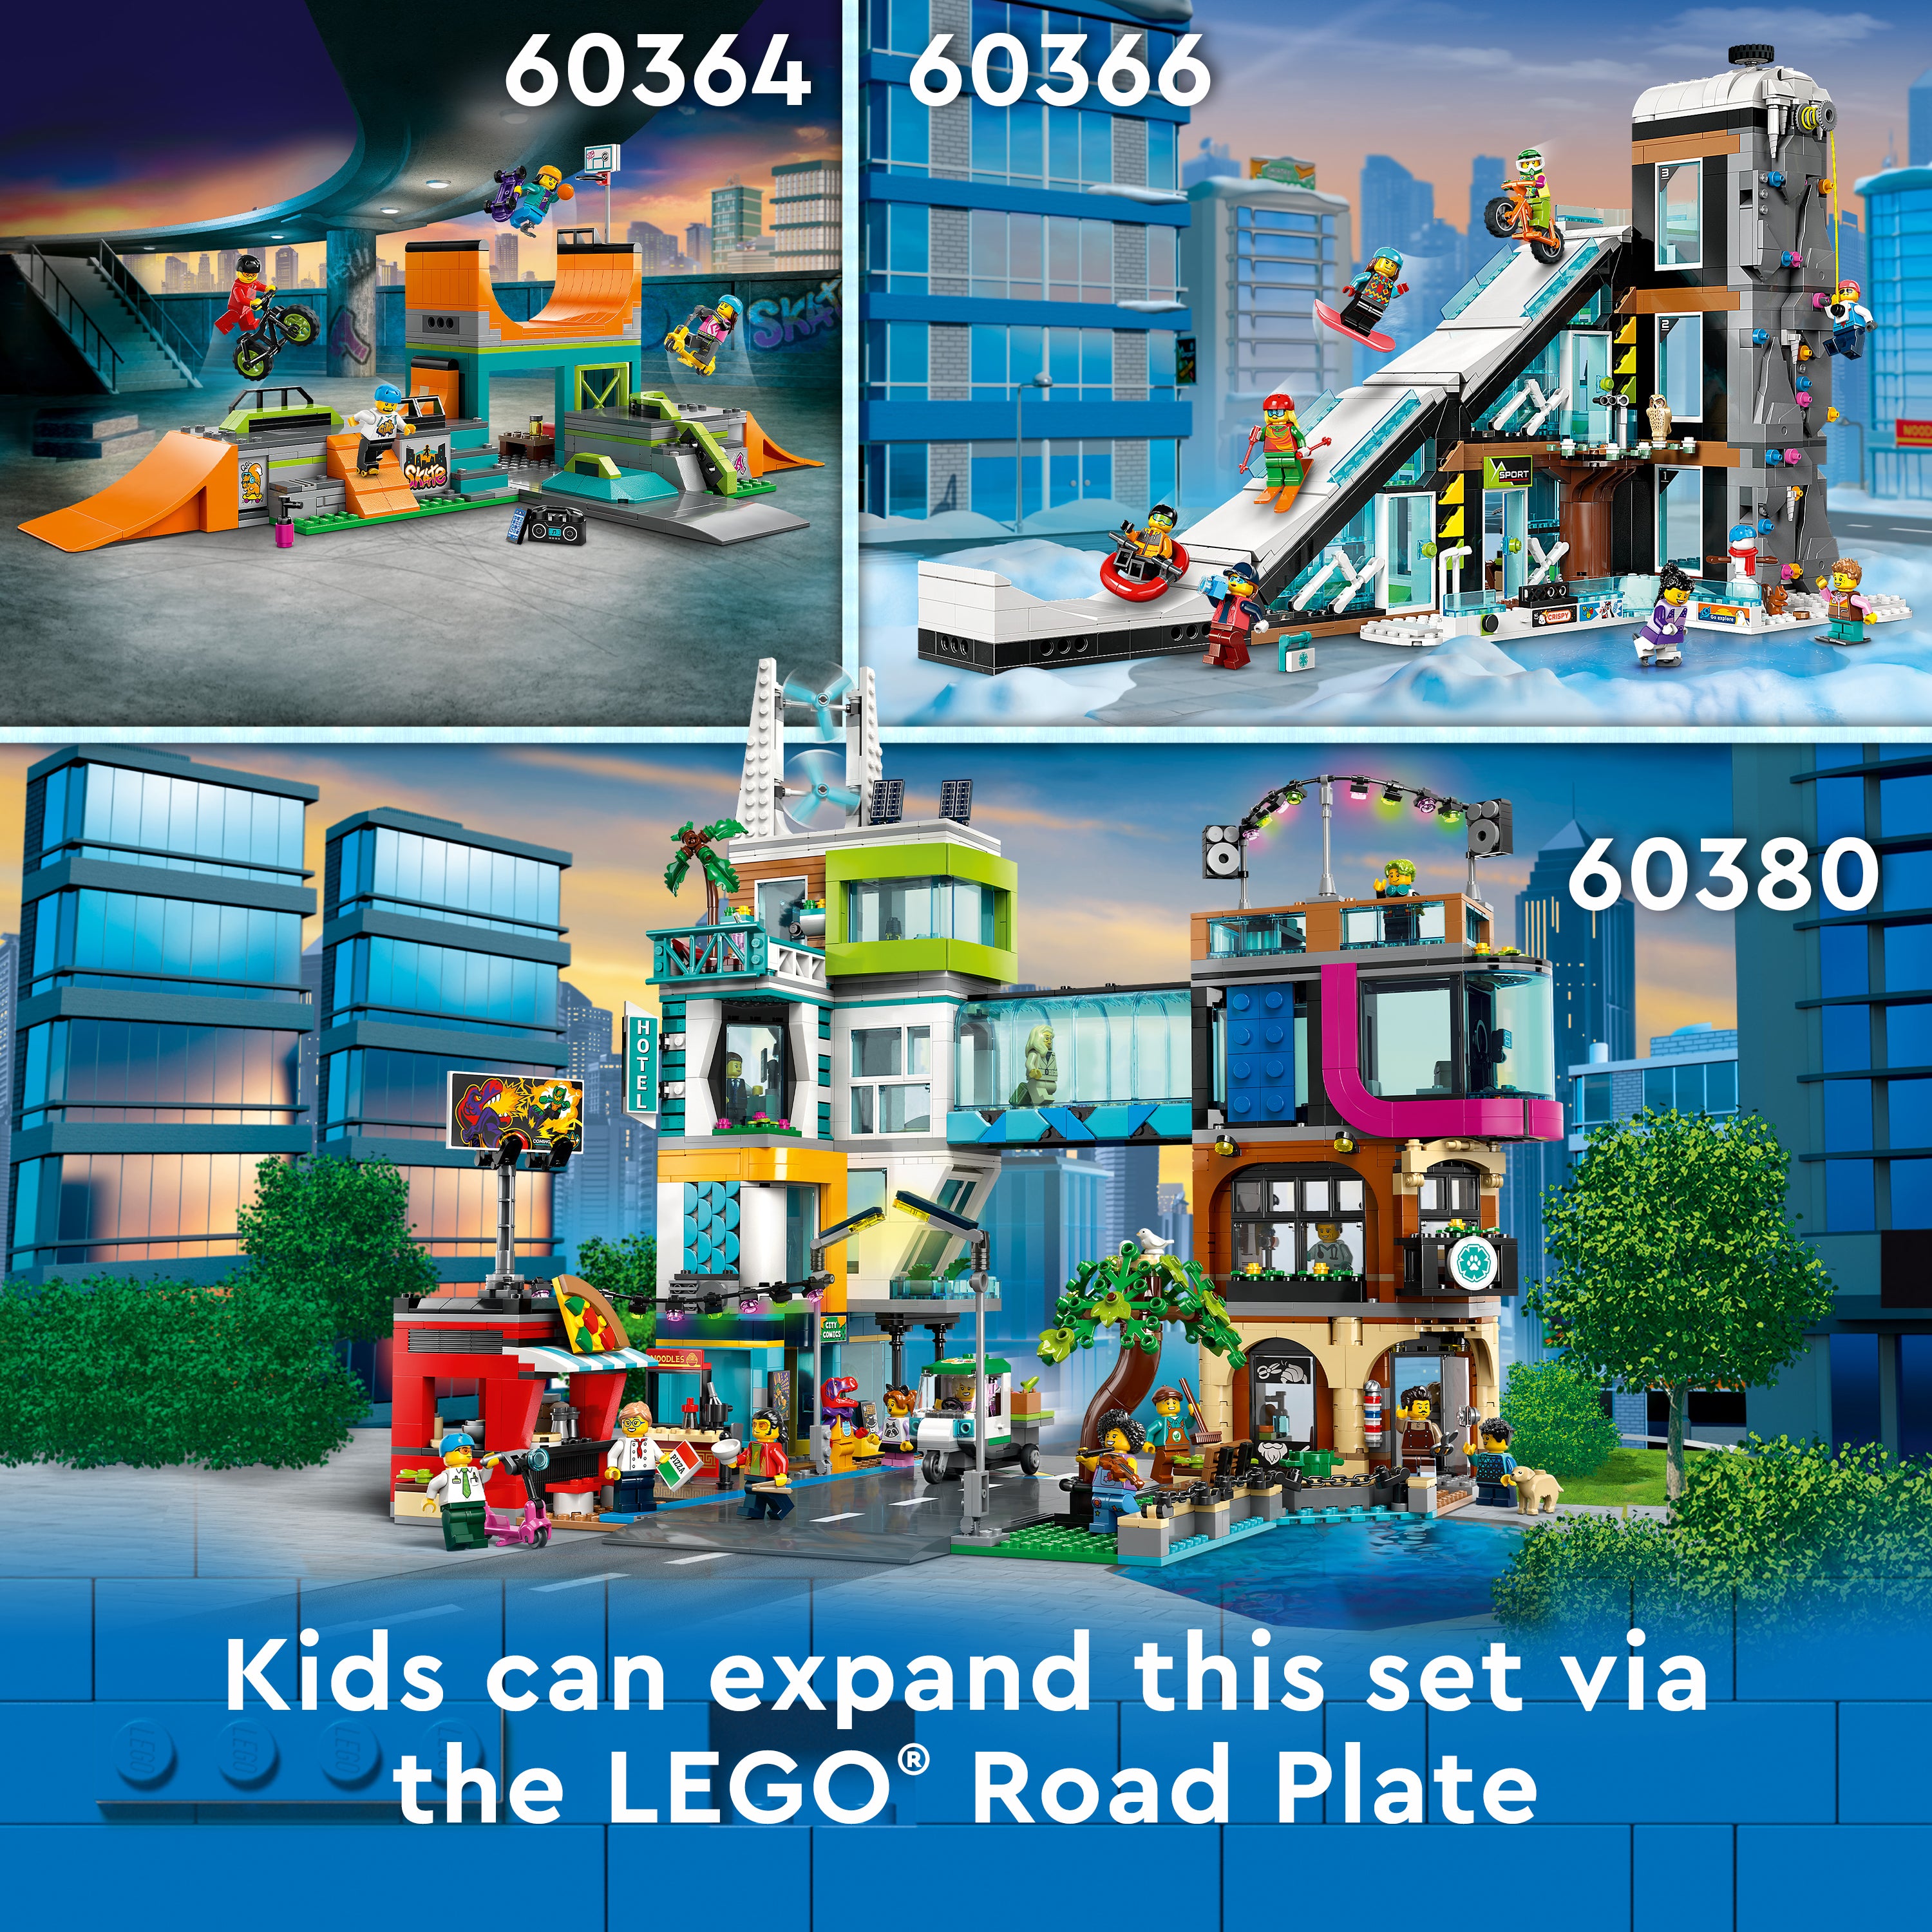 Lego 60365 Apartment Building